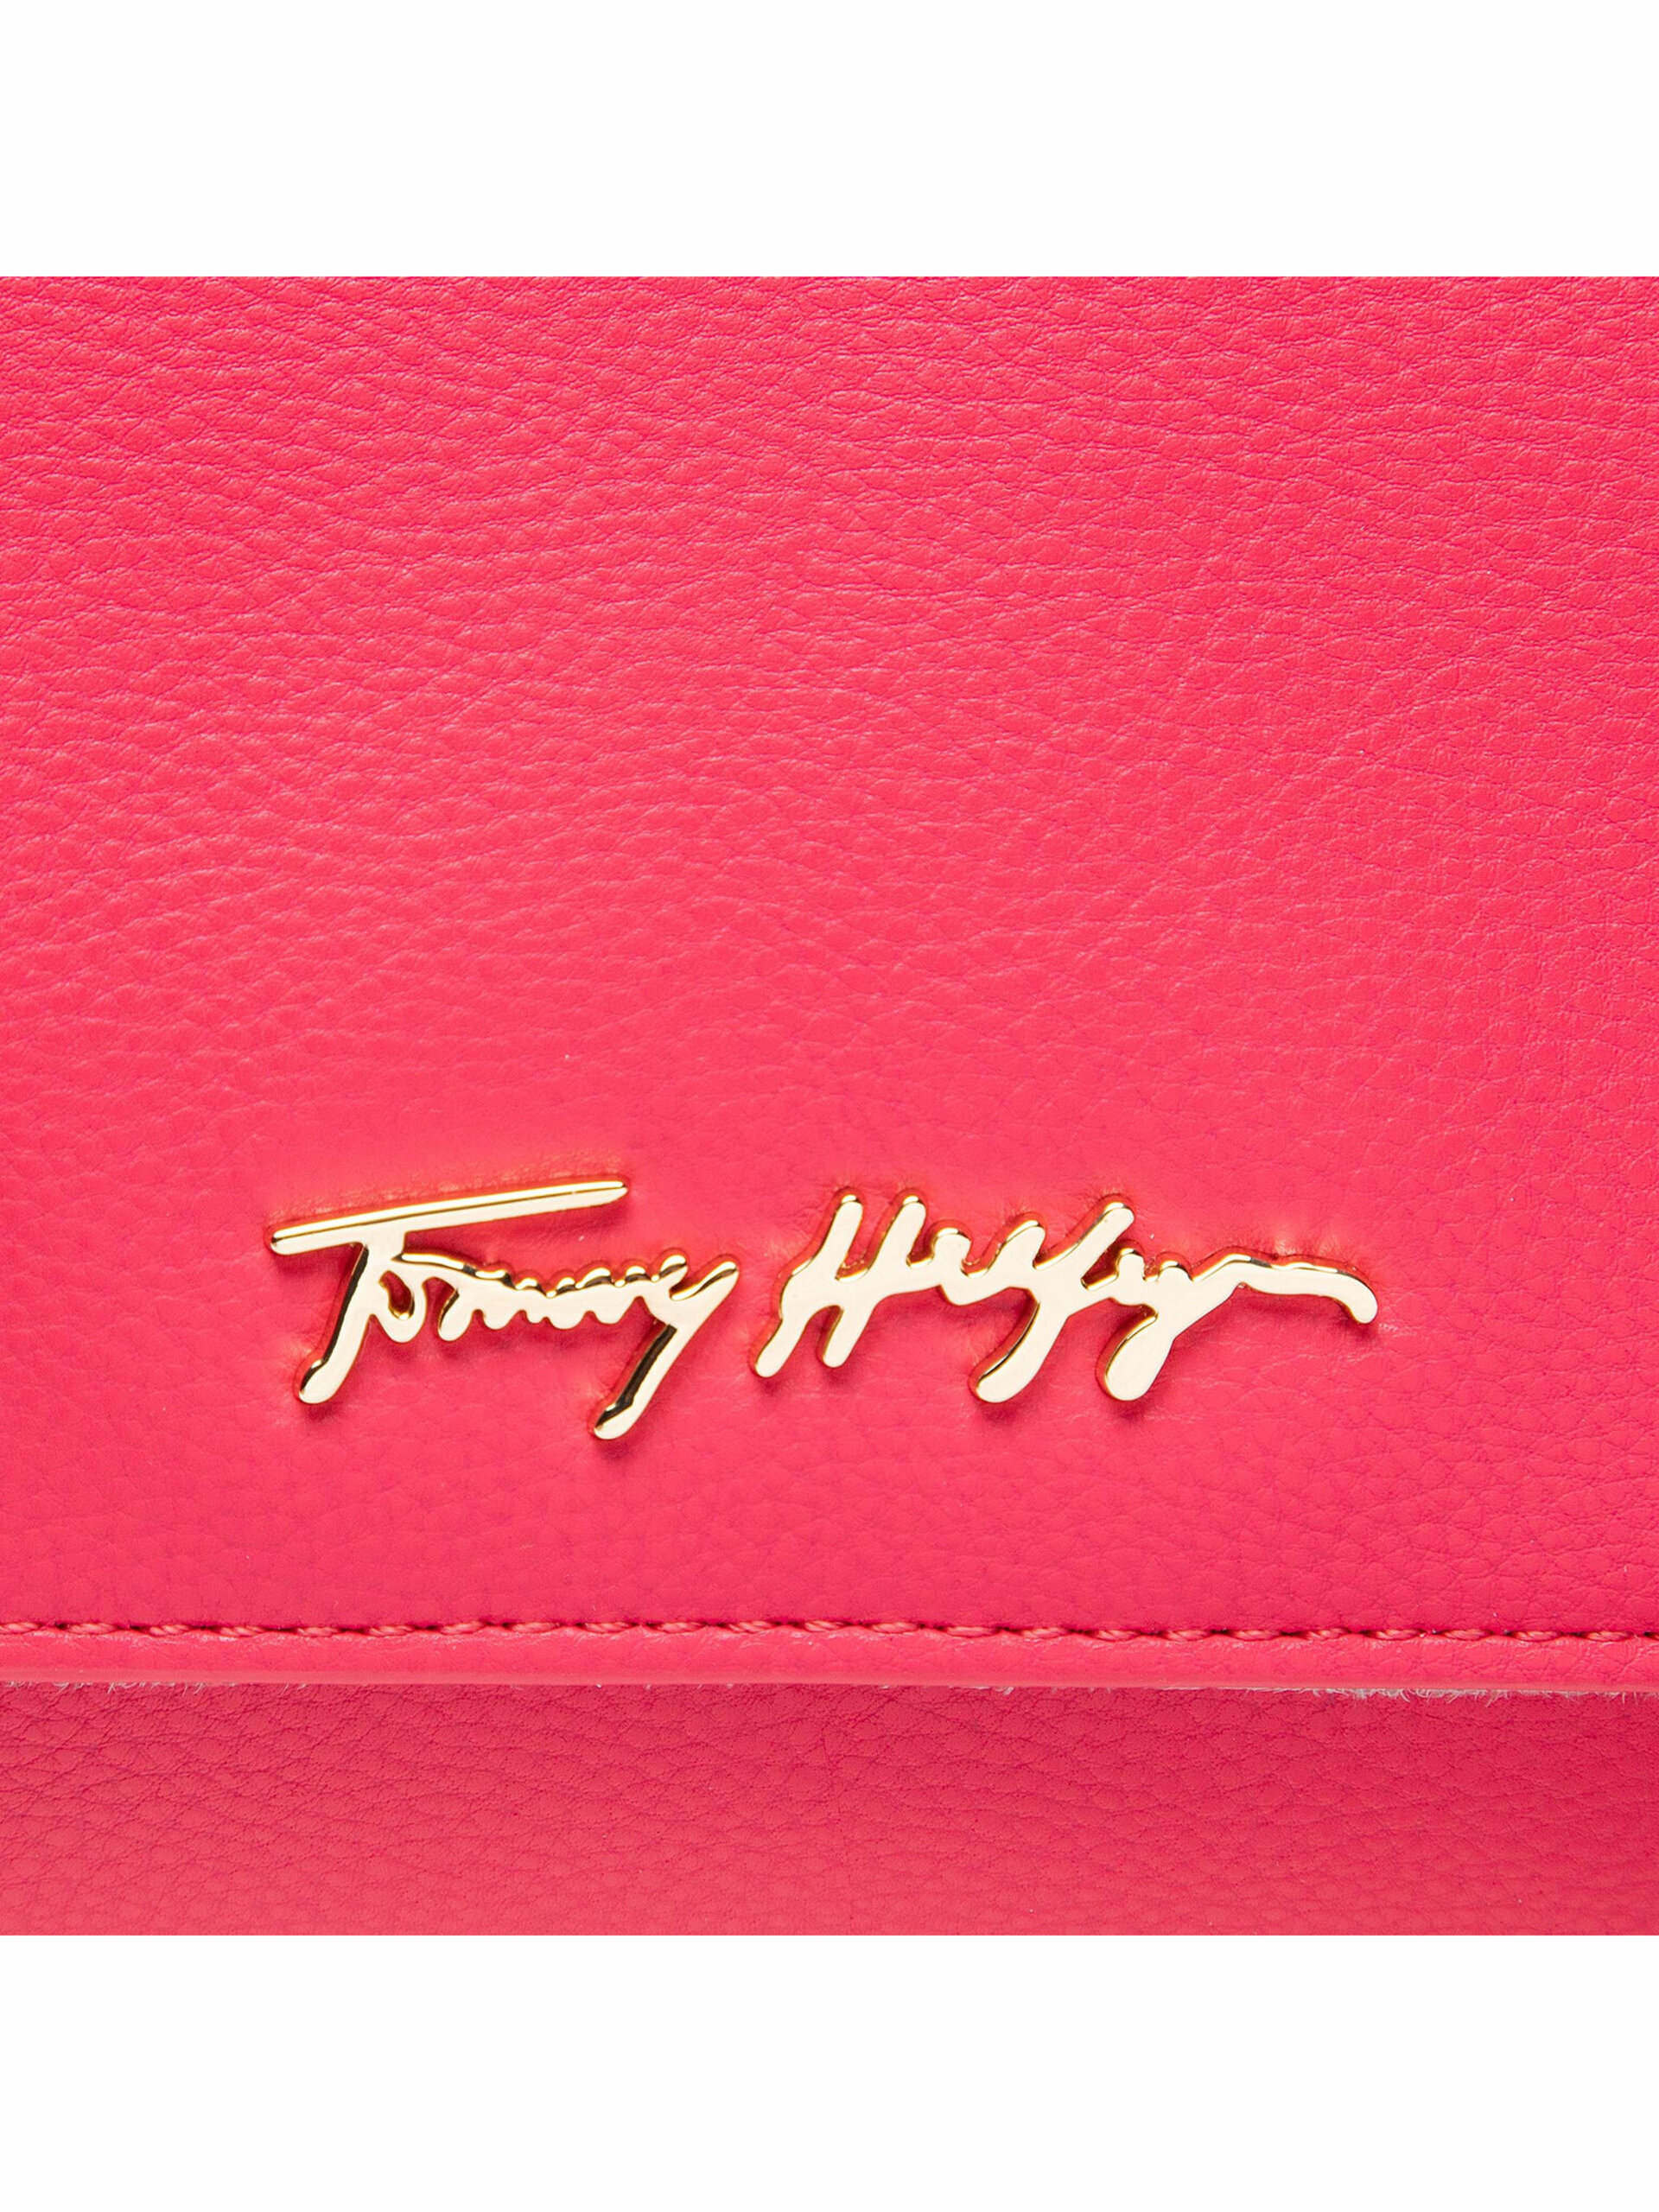 Tommy Hilfiger dámská růžová kabelka Joy - OS (TZR)